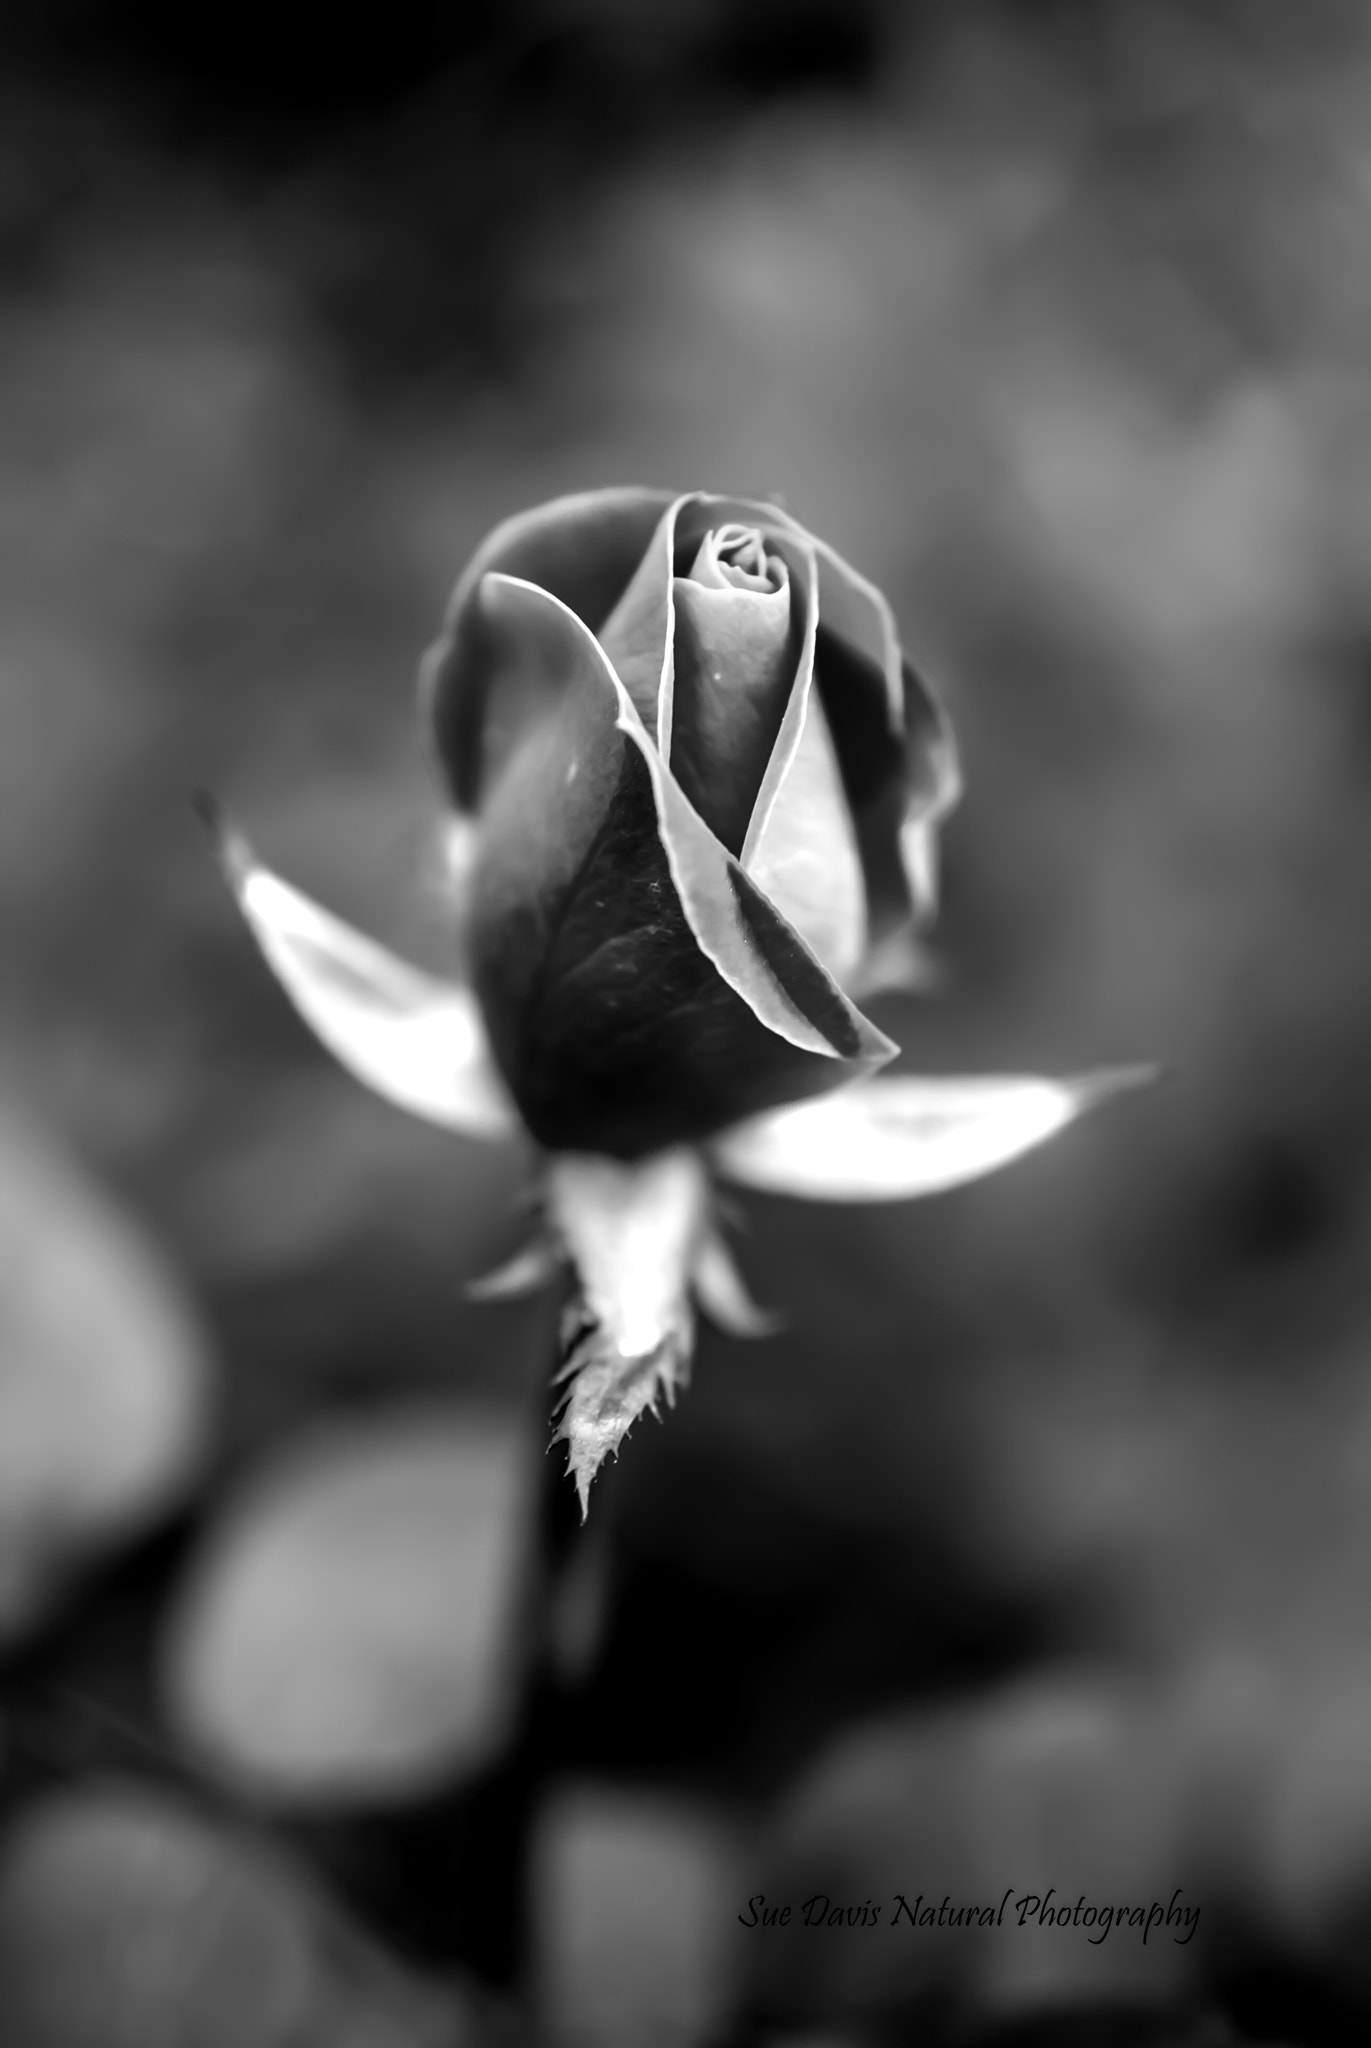 Nikon D3000 sample photo. The rose black & white photography